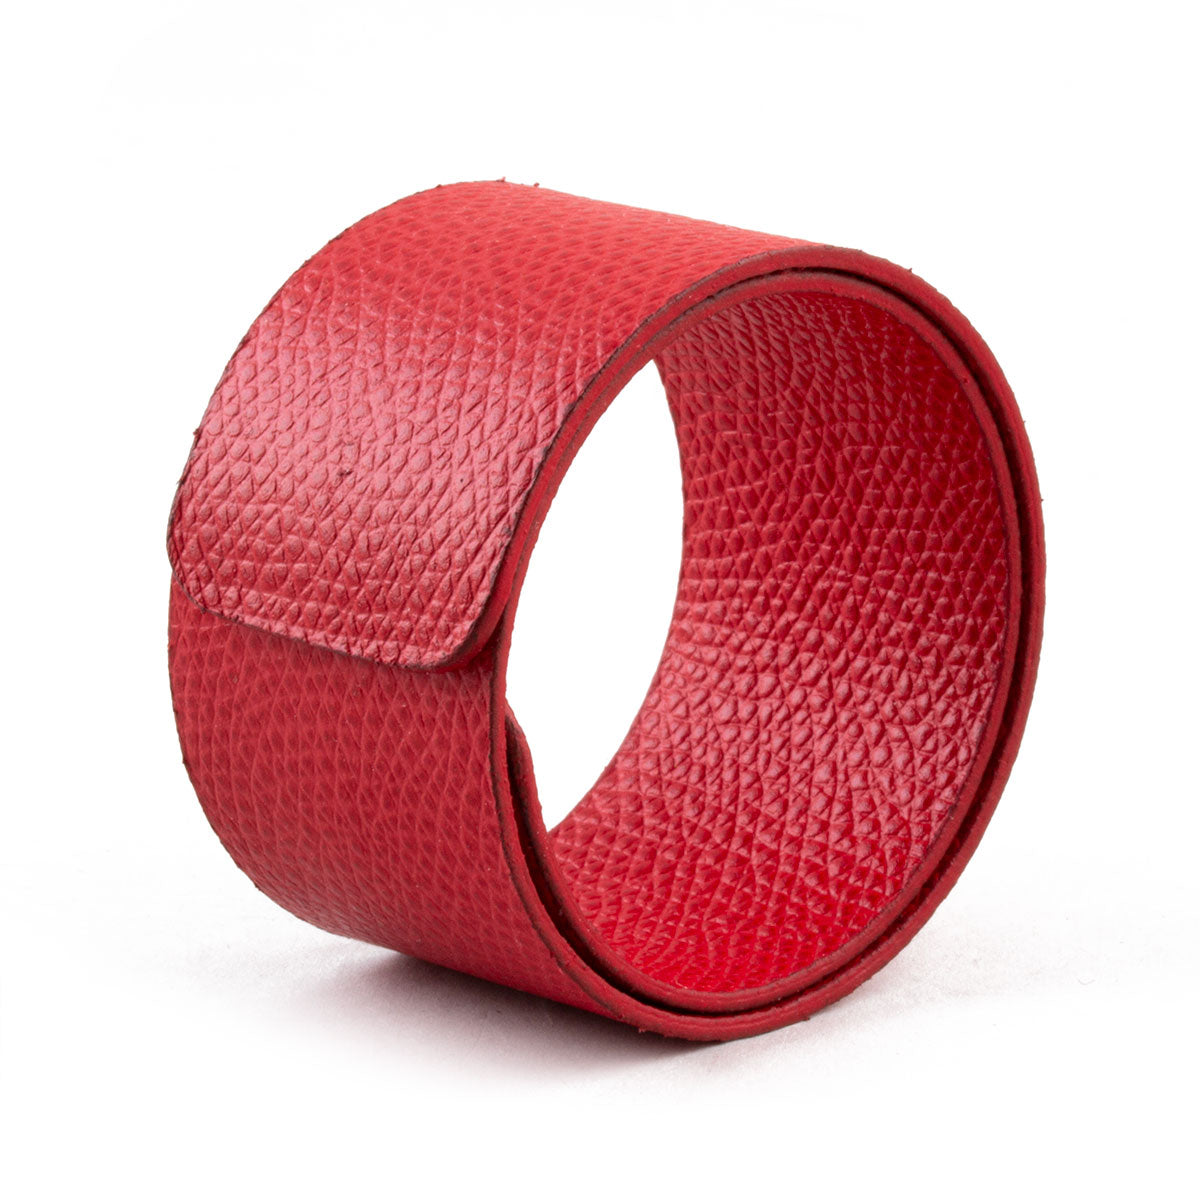 Bracelet ornemental style Snap - Veau grainé (noir, marron, bleu, rouge...)